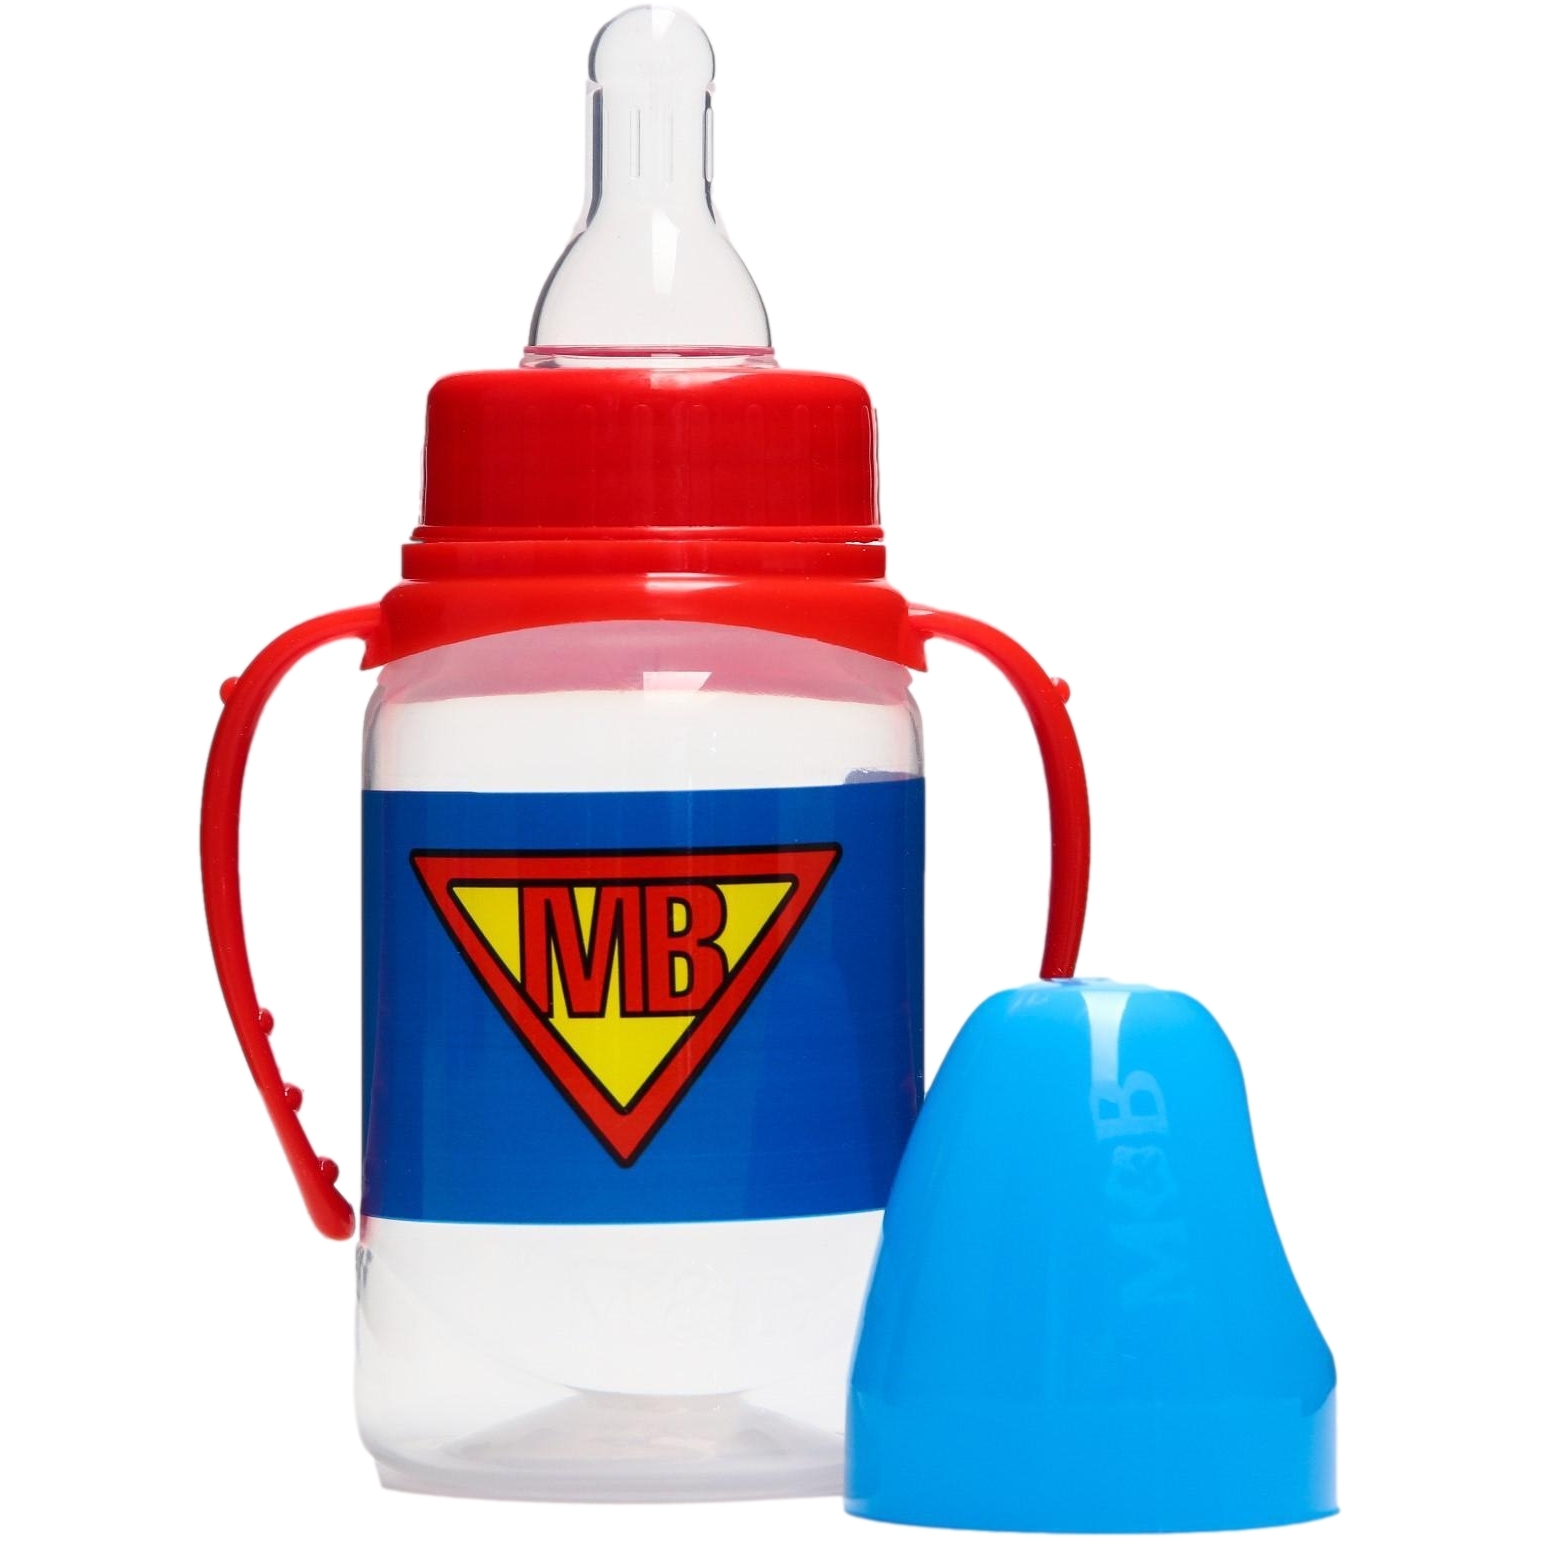 Бутылочка для кормления "Super baby" 150 мл цилиндр, с ручками 5399860